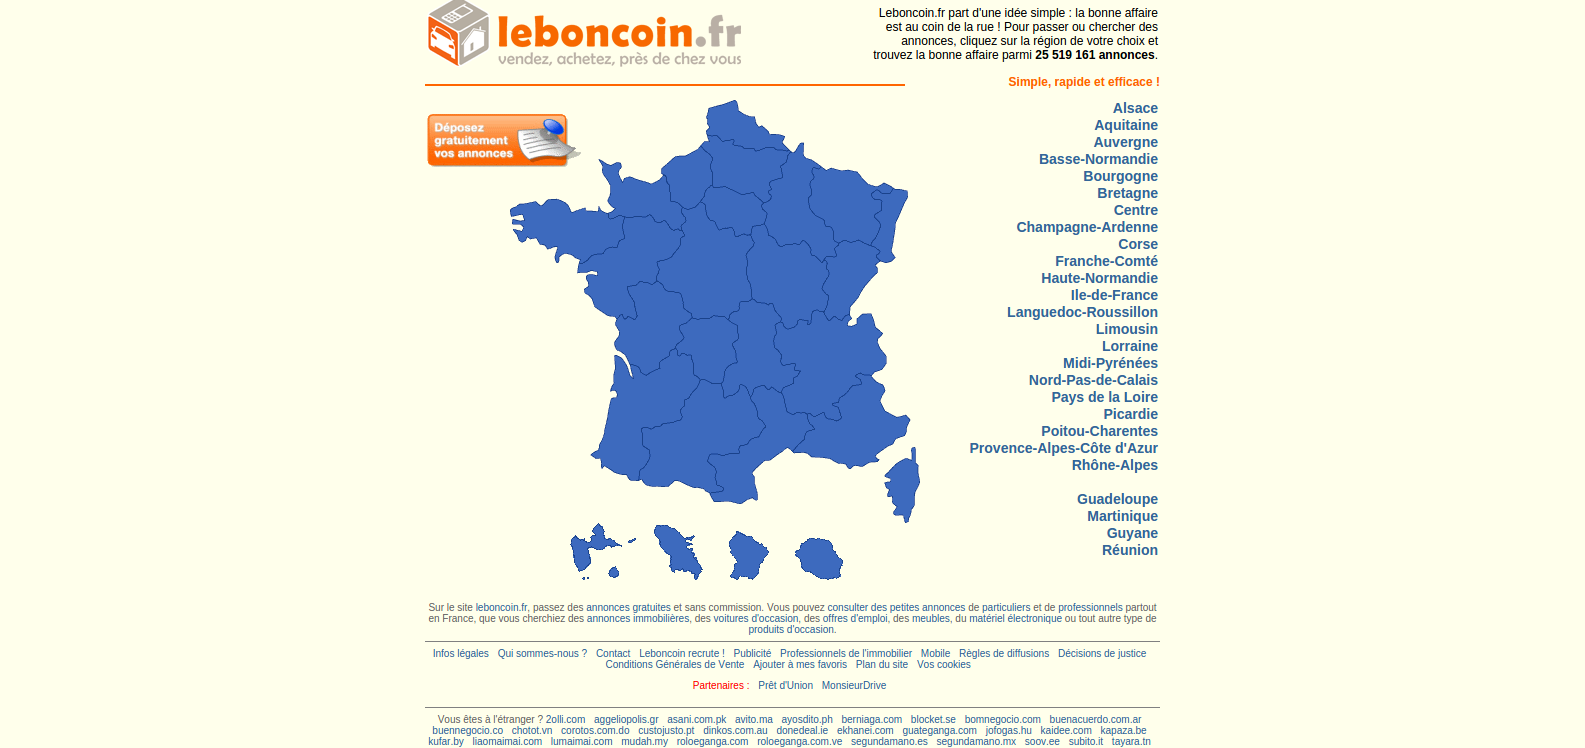 Capture du site internet Le Bon Coin